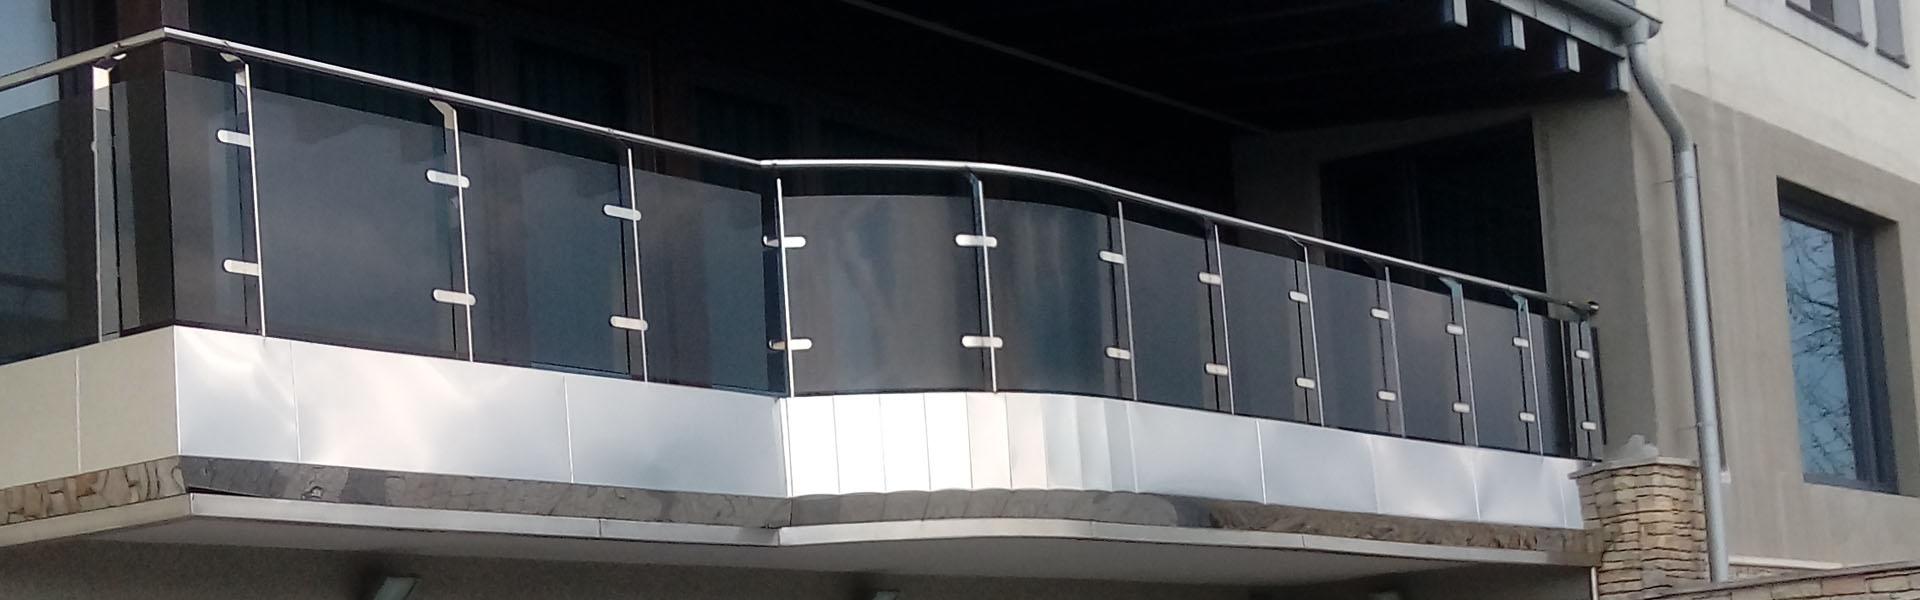 Stalowa balustrada balkonu w budynku - slajd 2